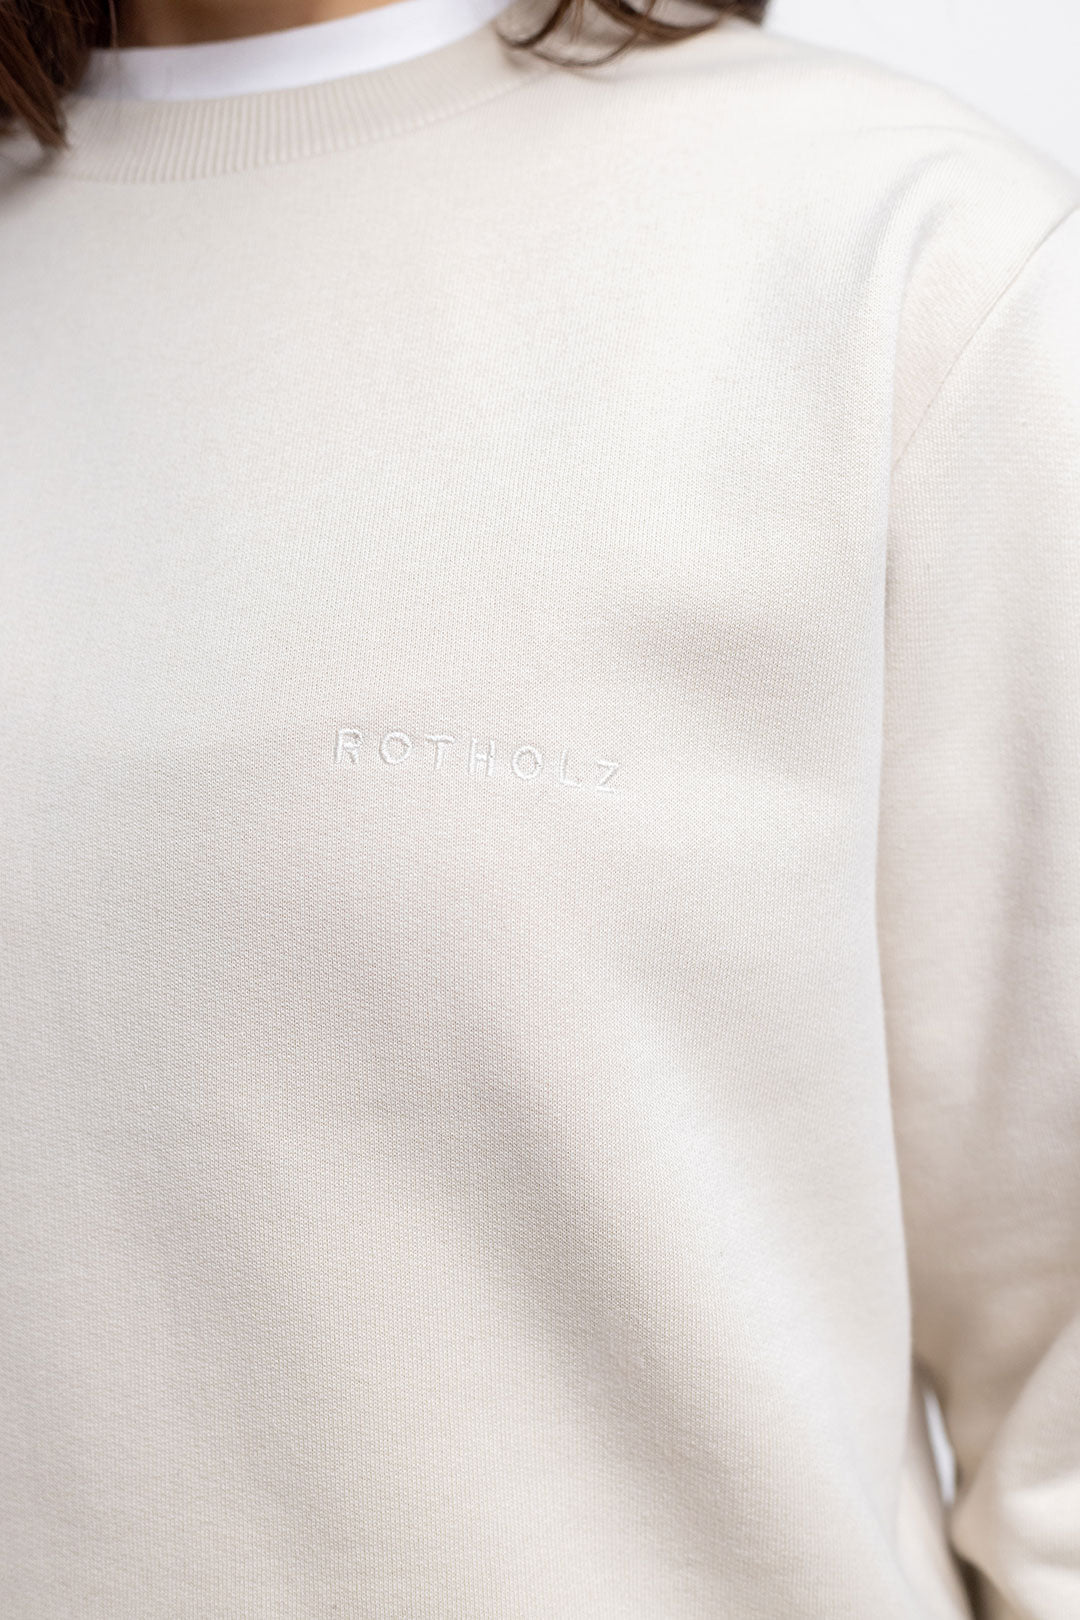 Logo sweat-shirt beige en coton 100% biologique de Rotholz